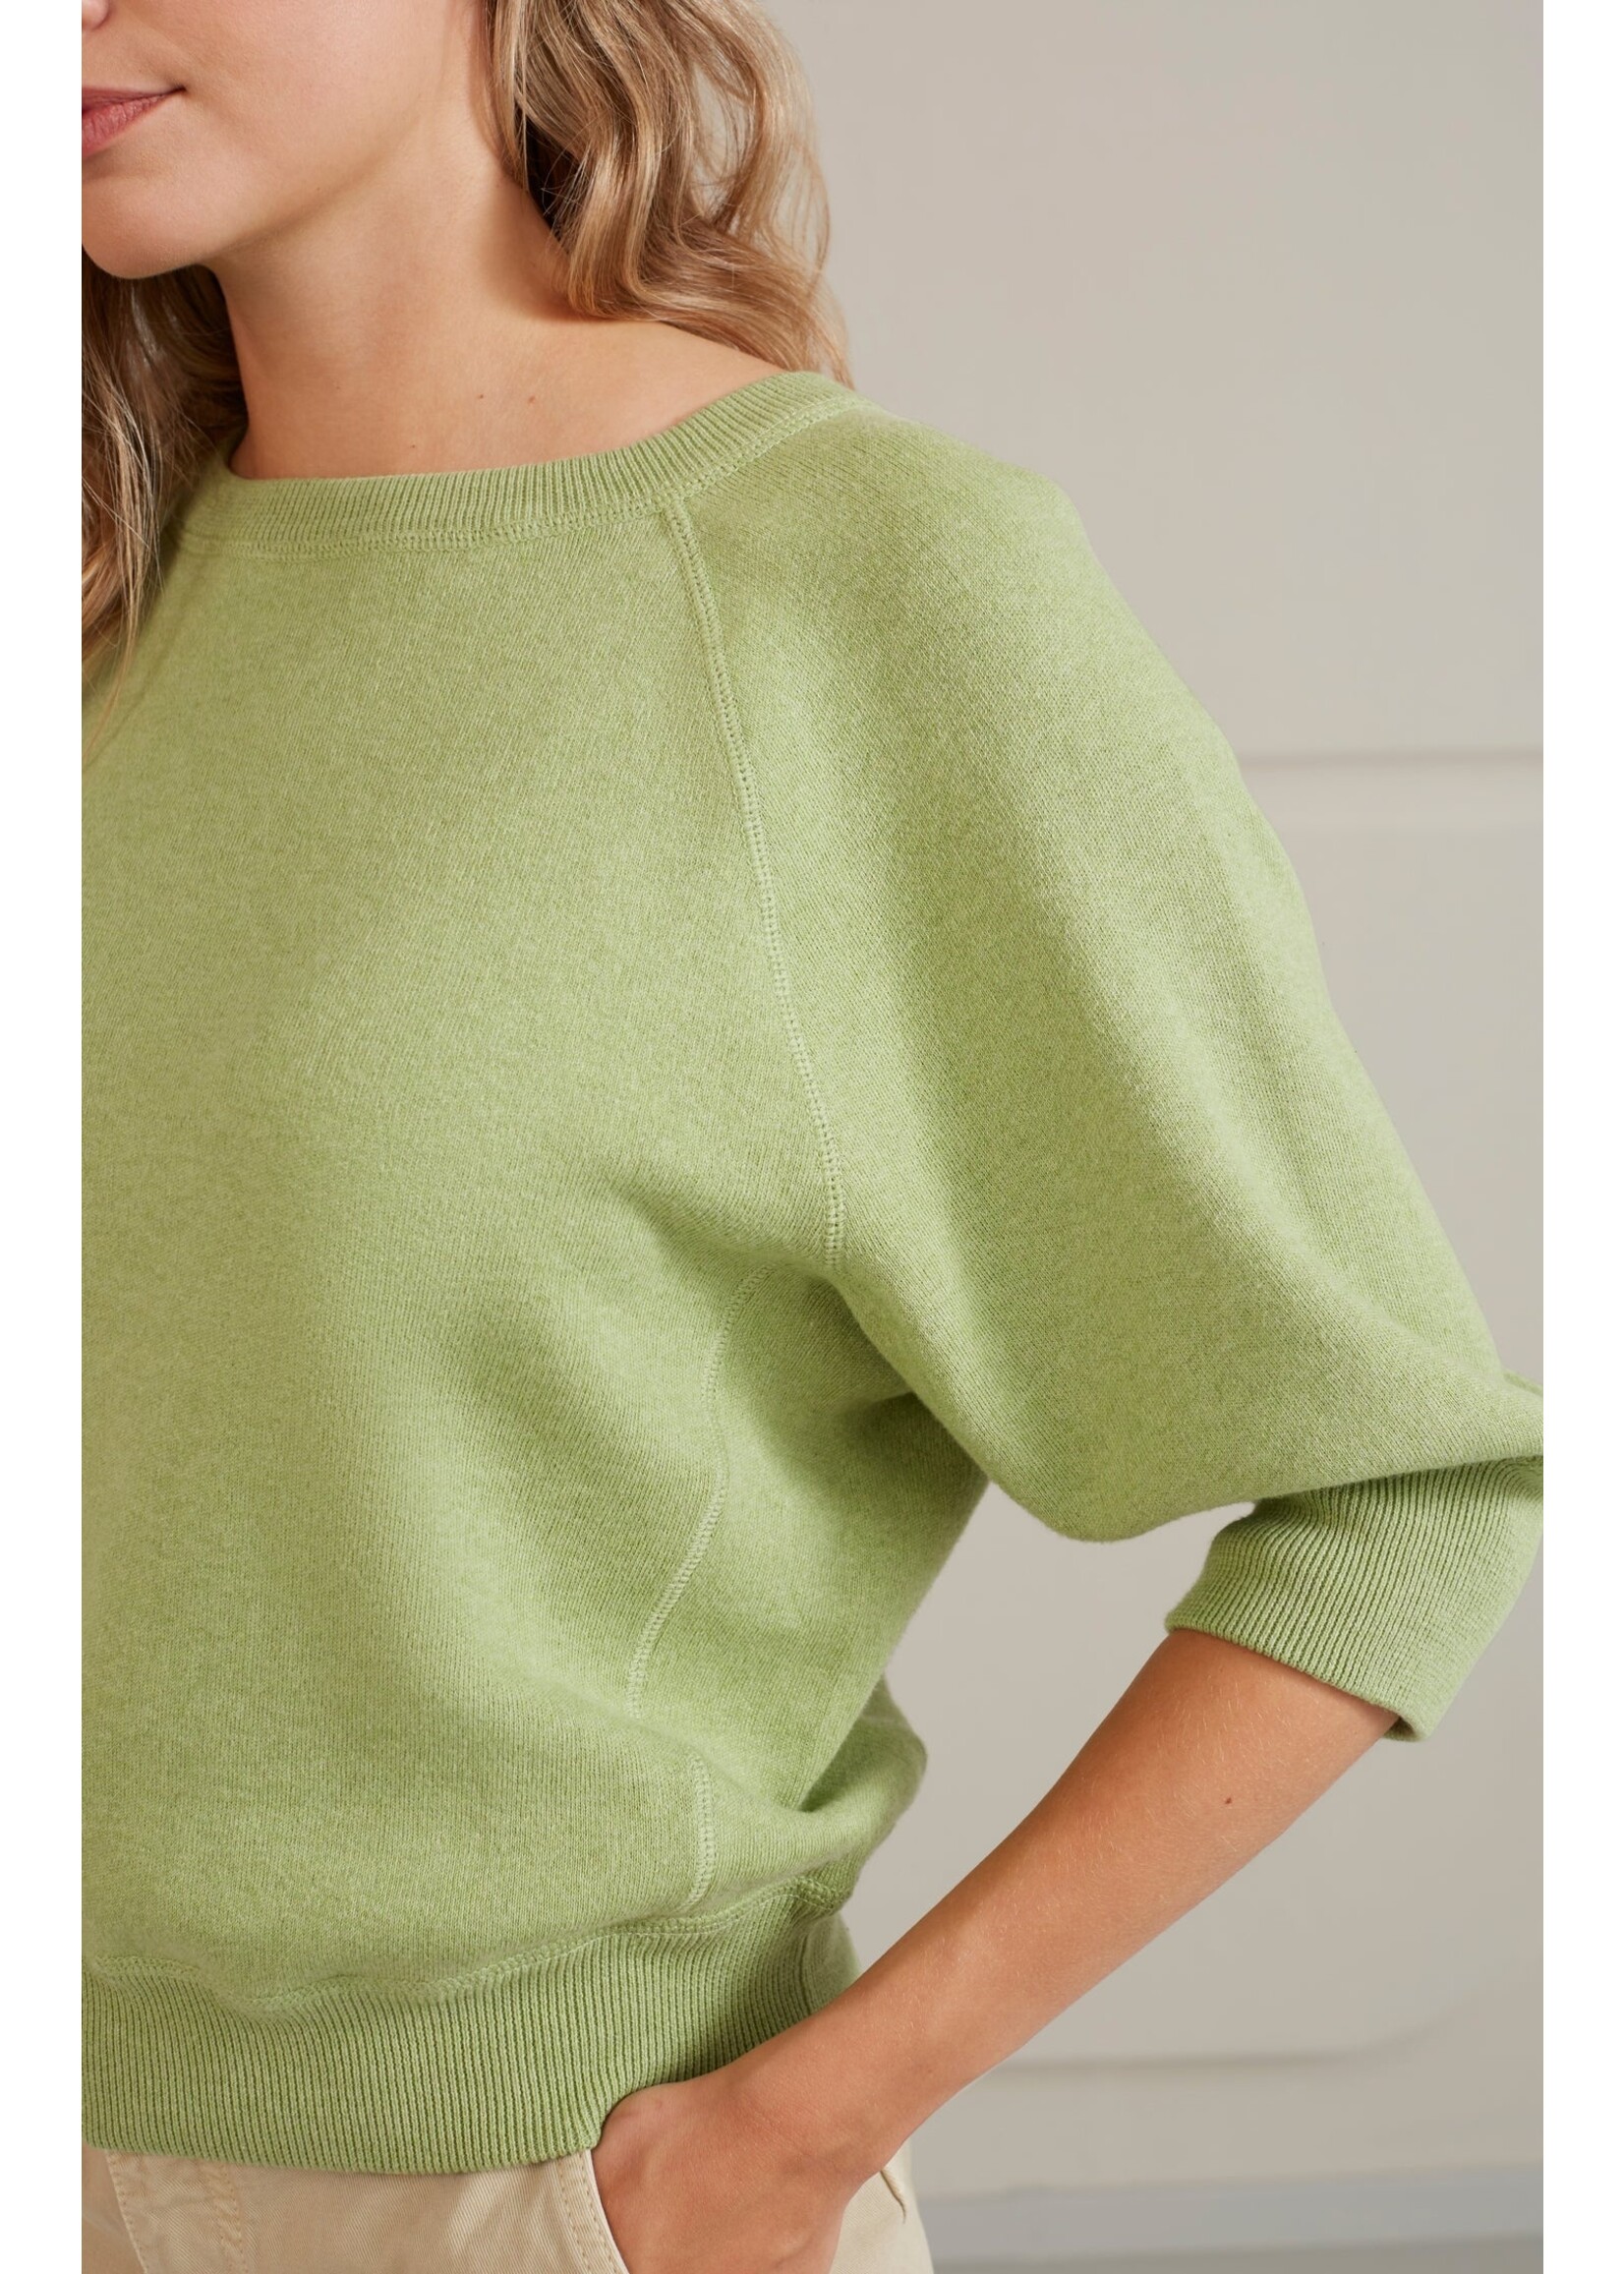 YAYA Yaya - Sweater with Raglan Sleeves